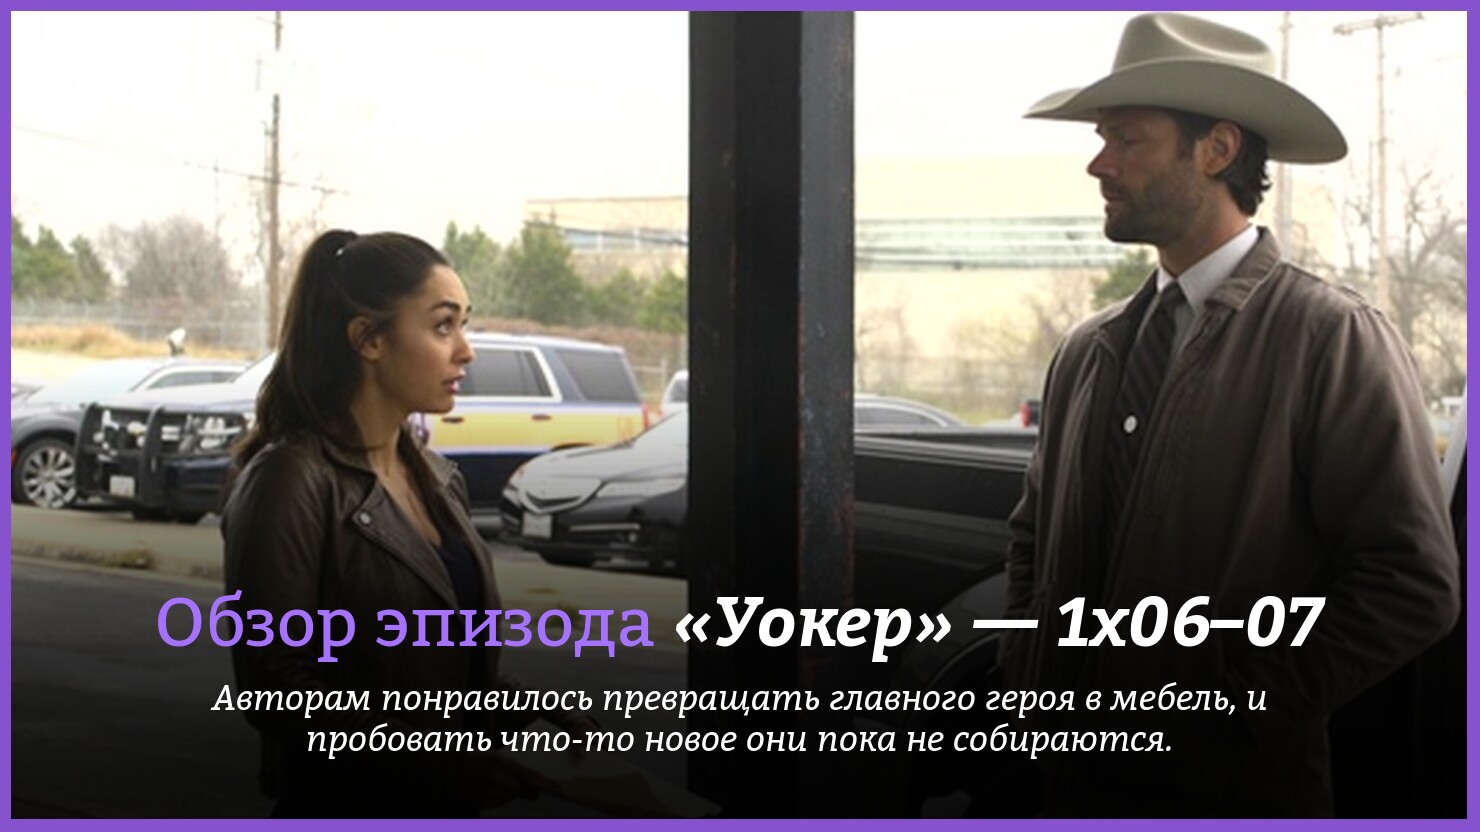 "Уокер" — 1x06–07